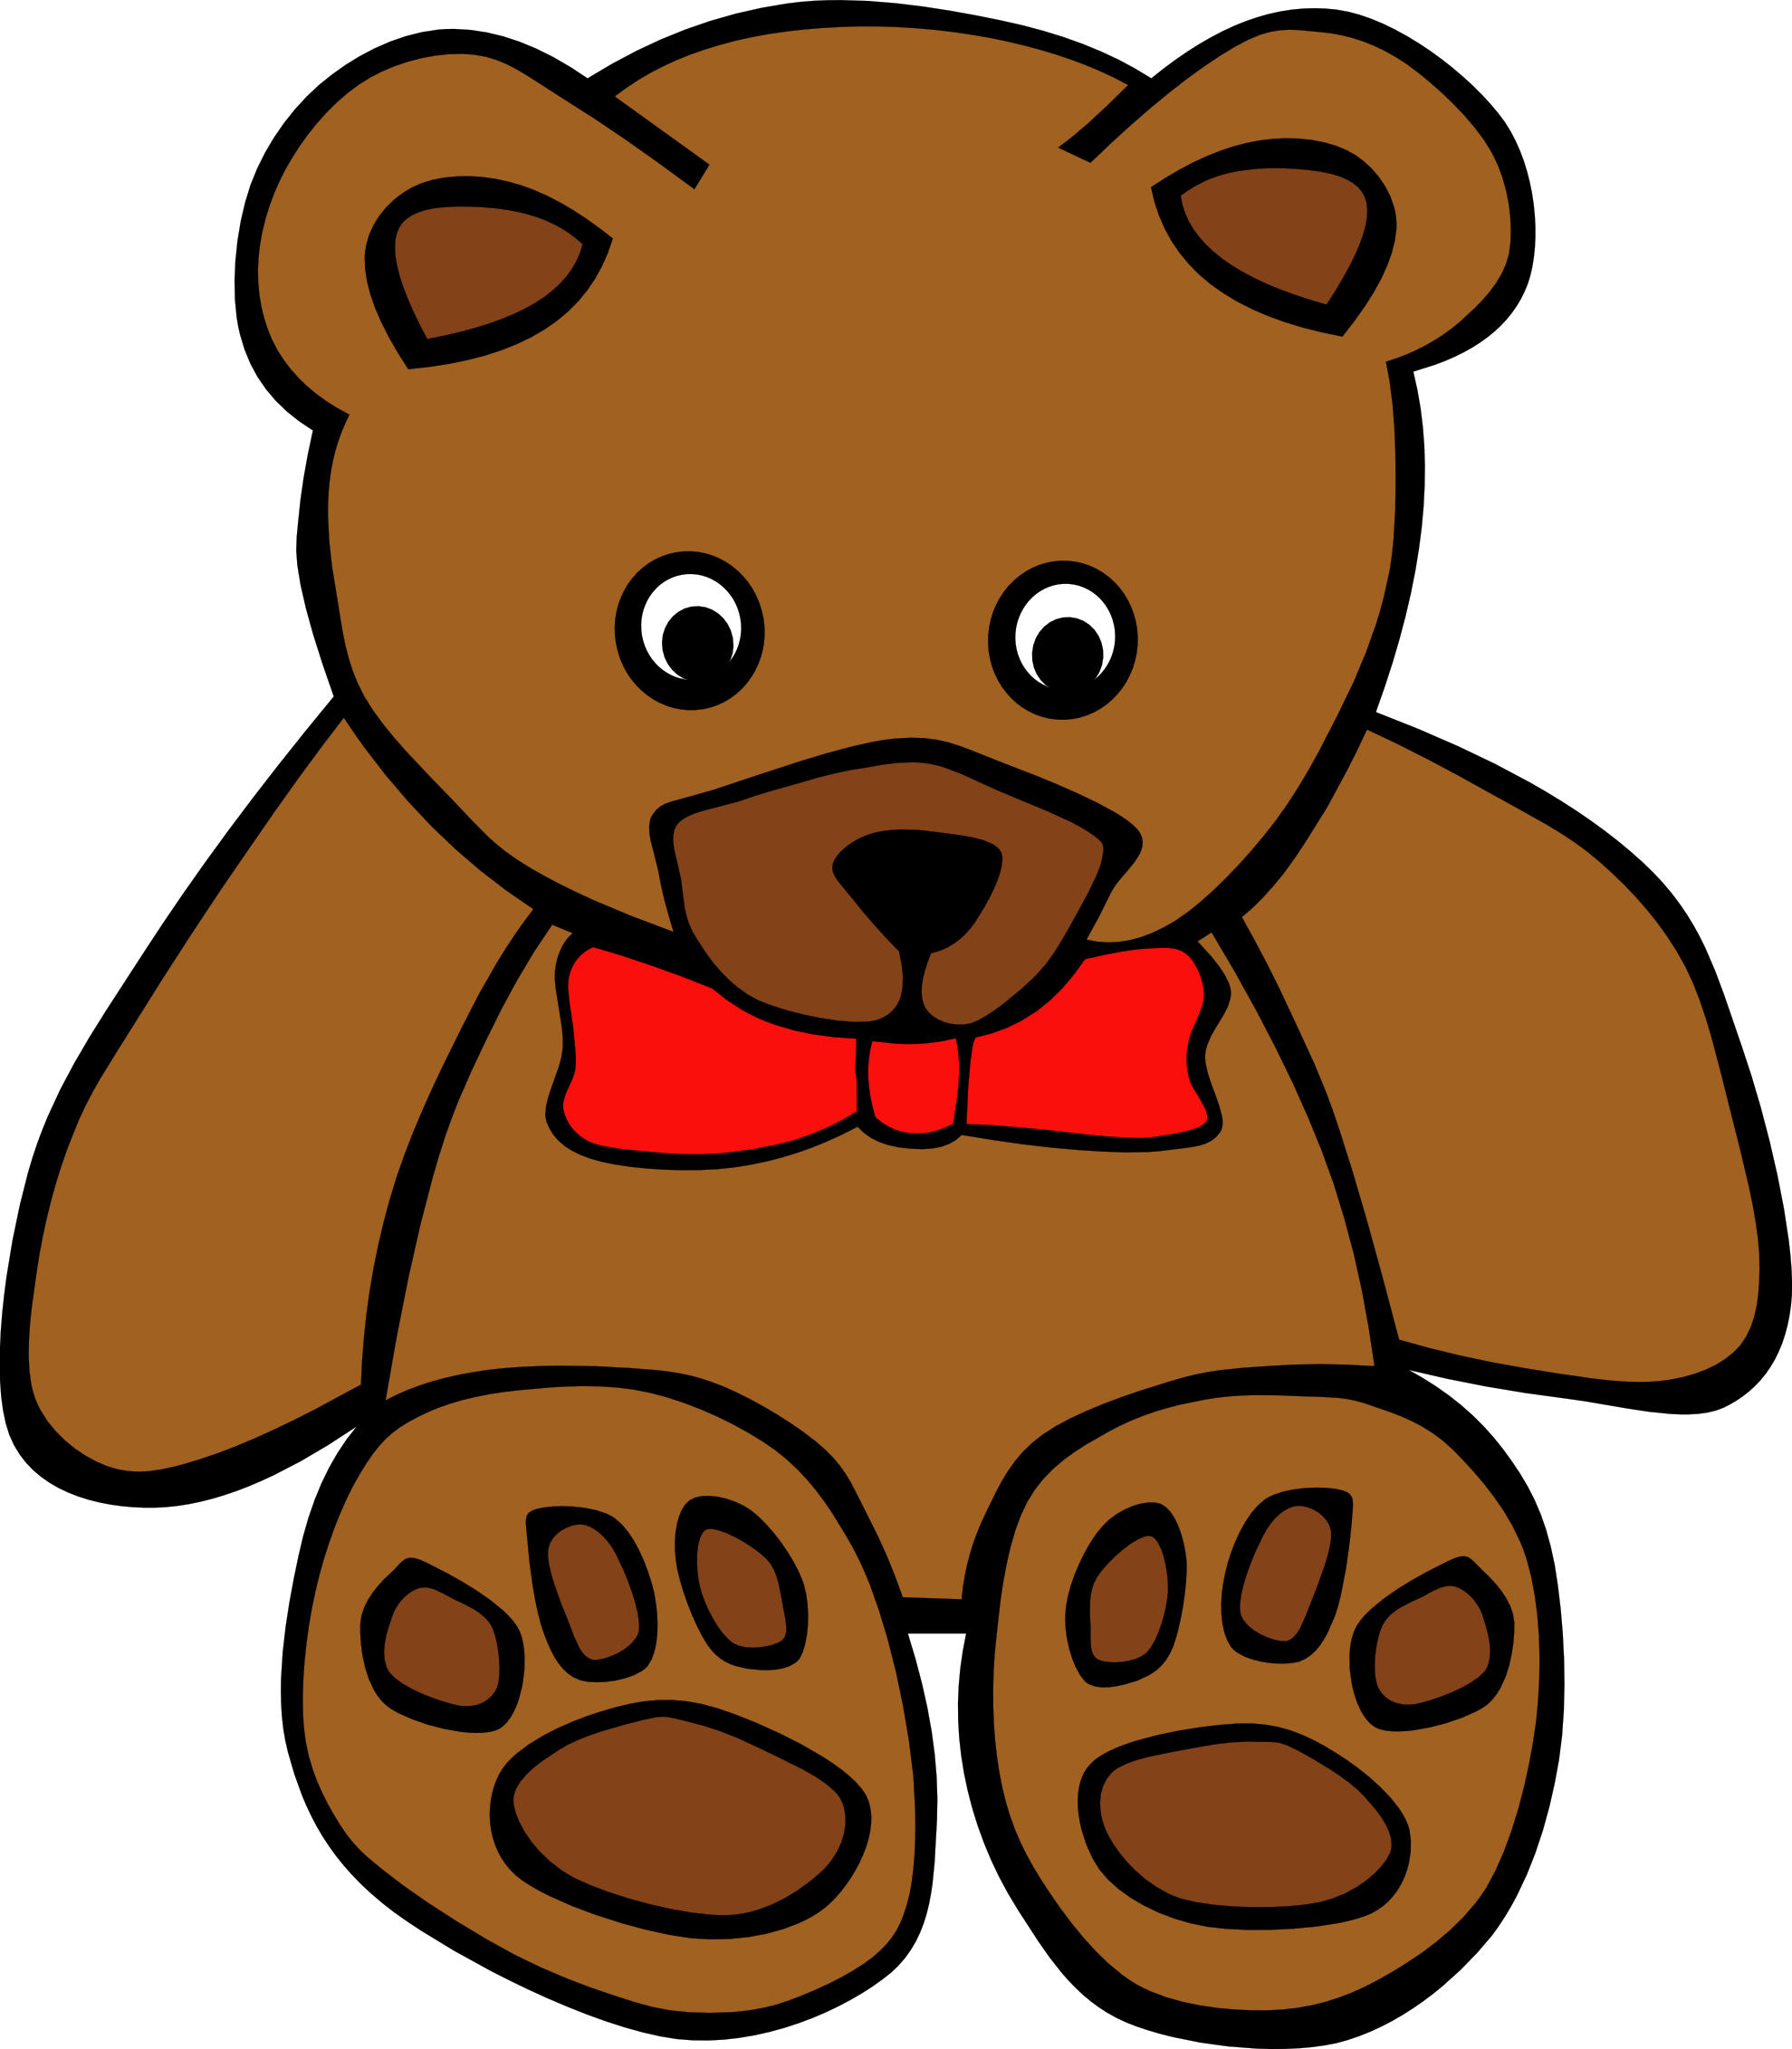 One Teddy Bear - ClipArt Best